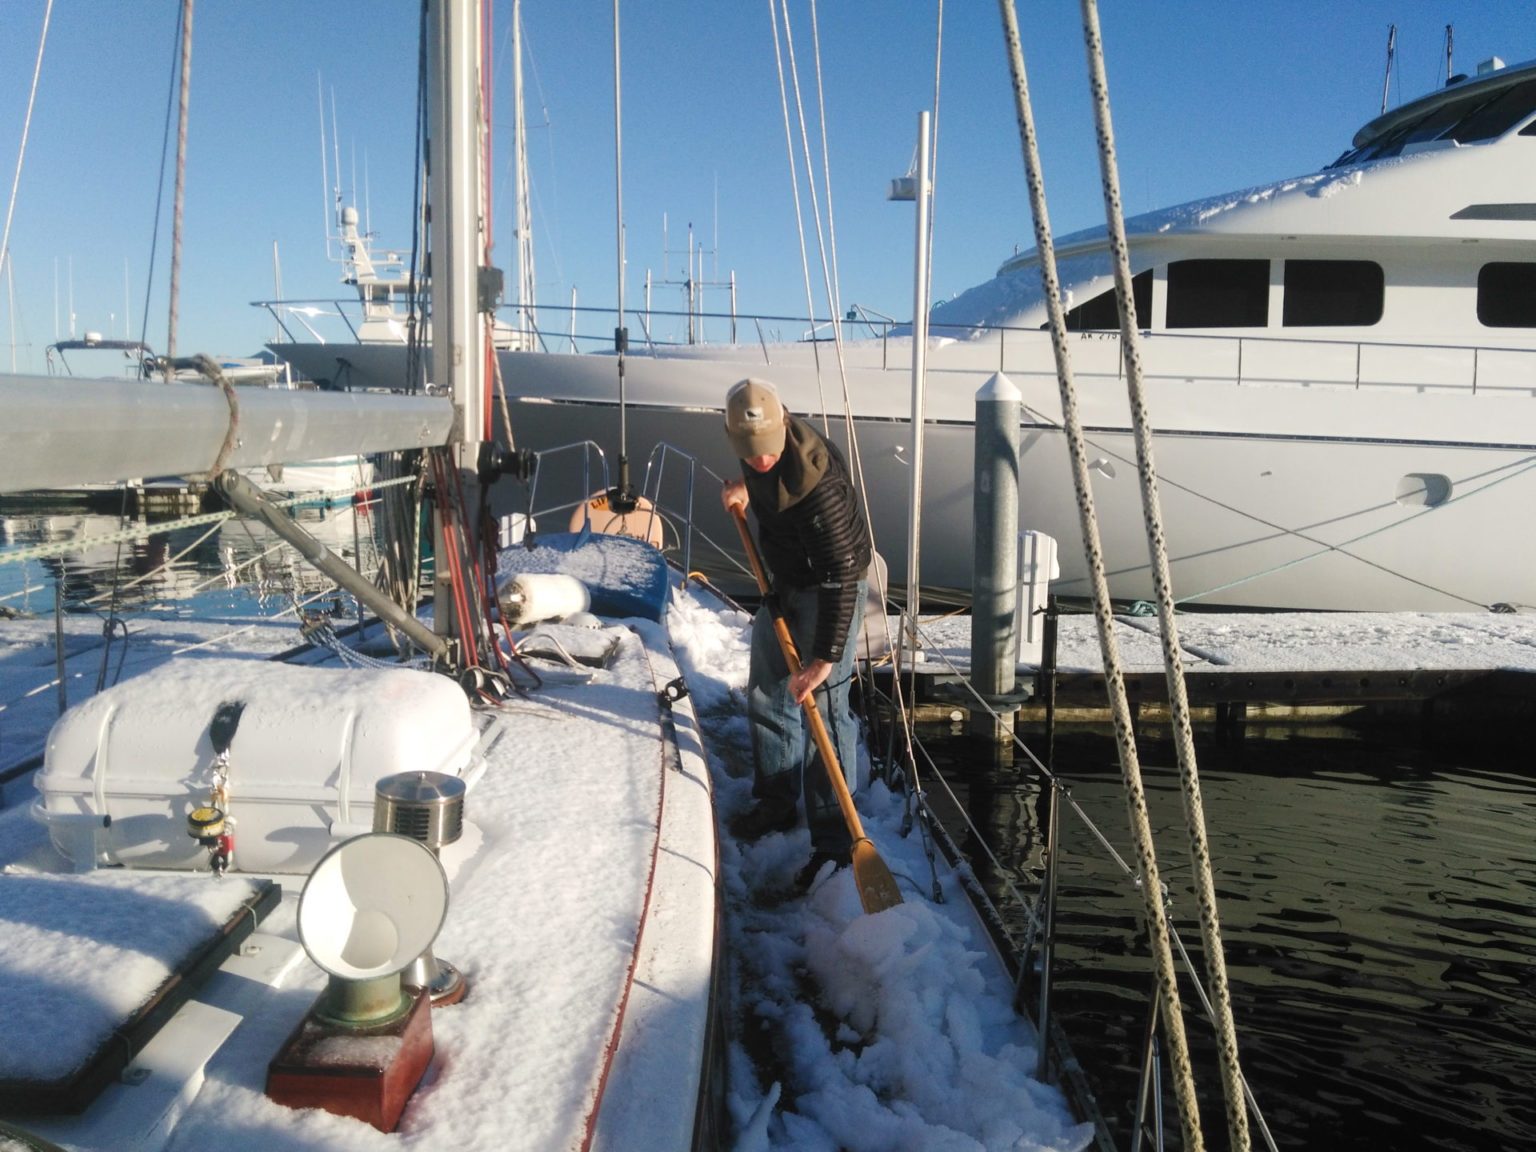 Shoveling snow on boat, winter liveaboard